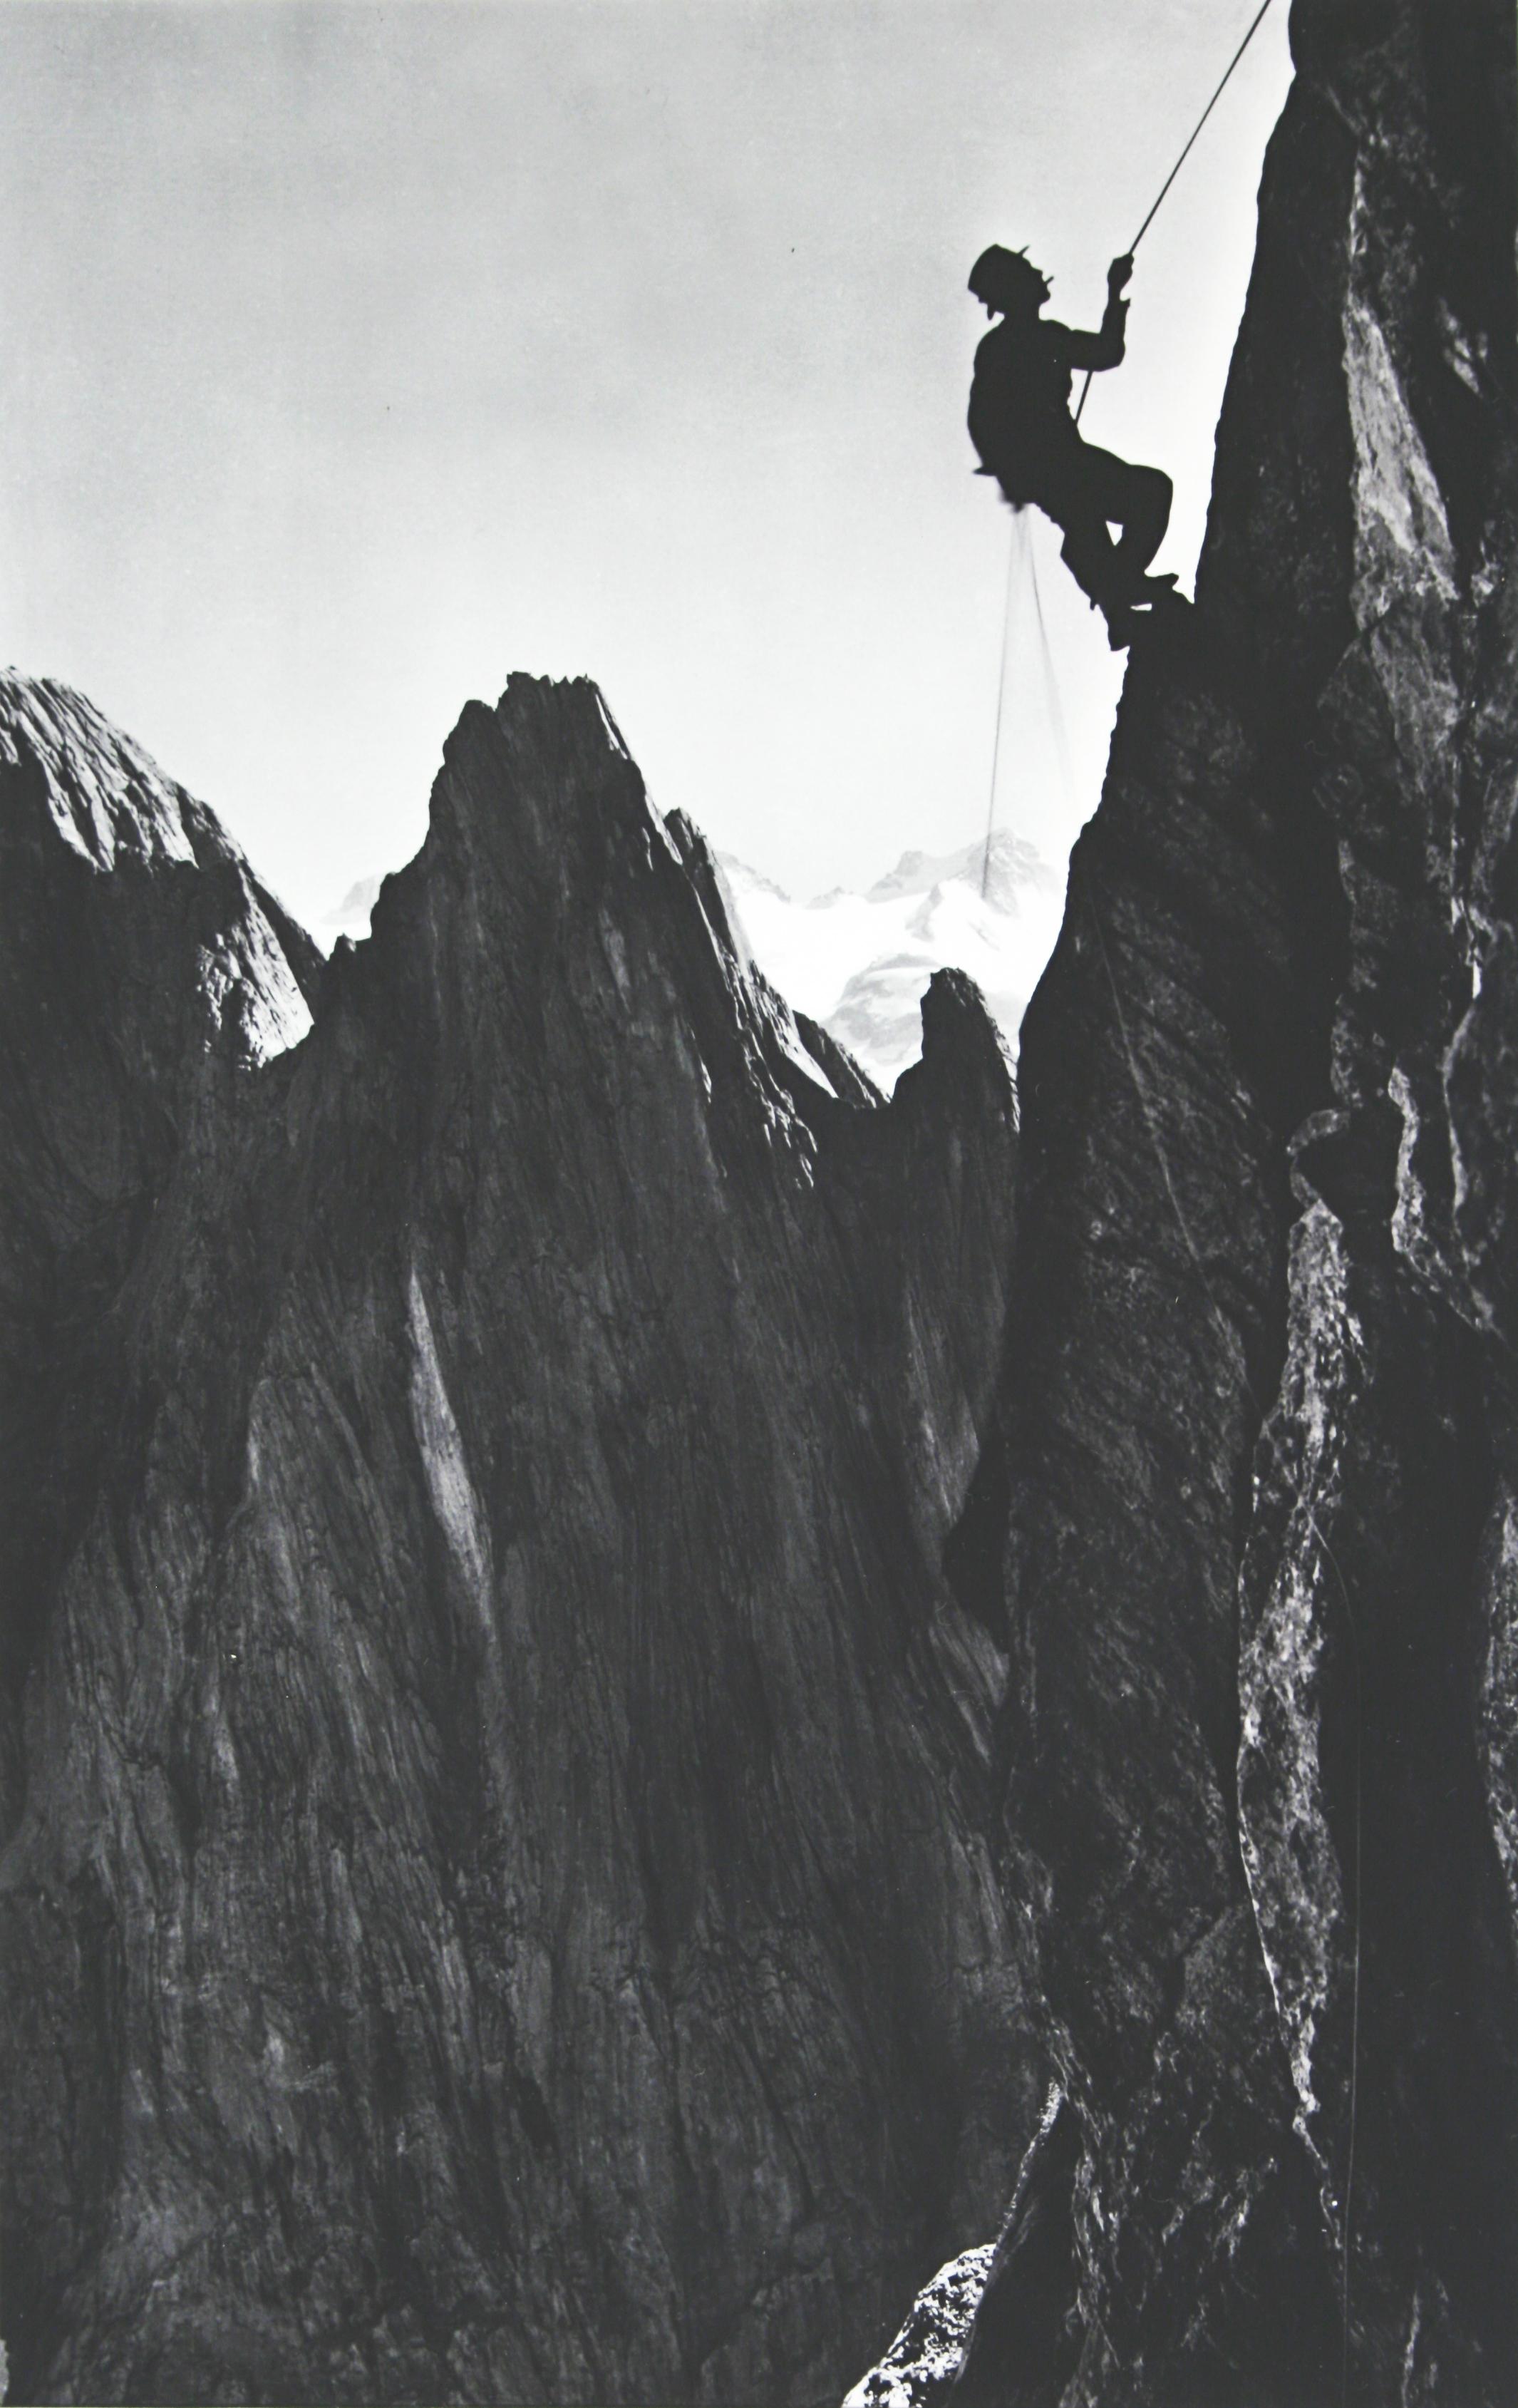 Photographie vintage d'alpinisme.
'CLIMBER' Simelistock, Suisse, une nouvelle image photographique en noir et blanc montée d'après une photographie originale d'alpinisme datant des années 1930.

Engelhoerner est le nom d'un groupe de montagnes